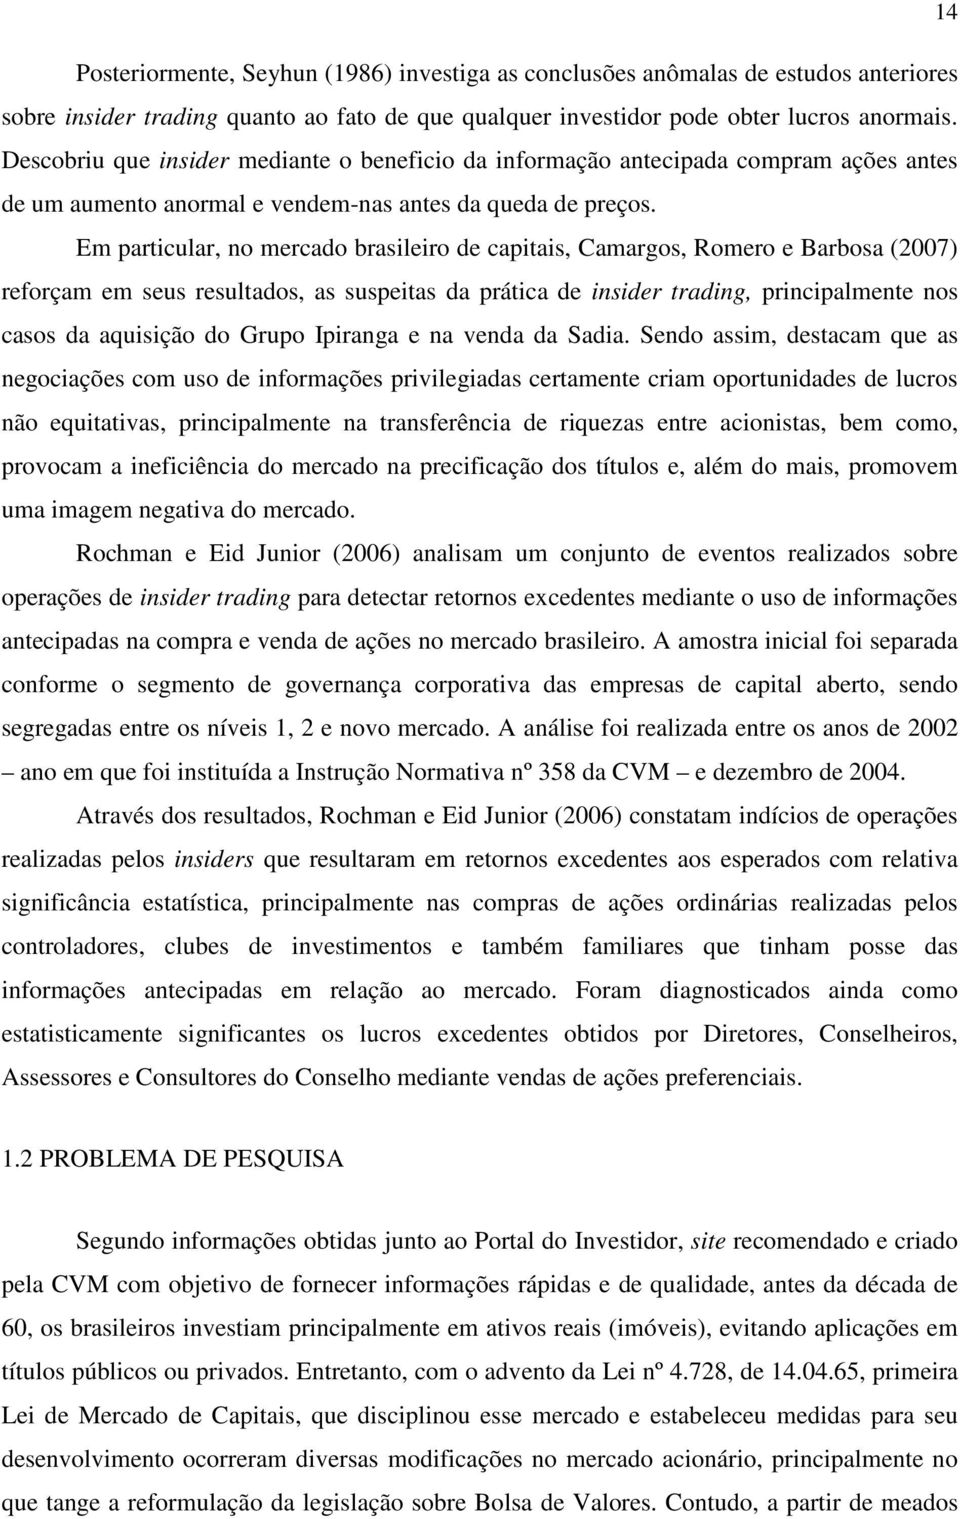 Em particular, no mercado brasileiro de capitais, Camargos, Romero e Barbosa (2007) reforçam em seus resultados, as suspeitas da prática de insider trading, principalmente nos casos da aquisição do